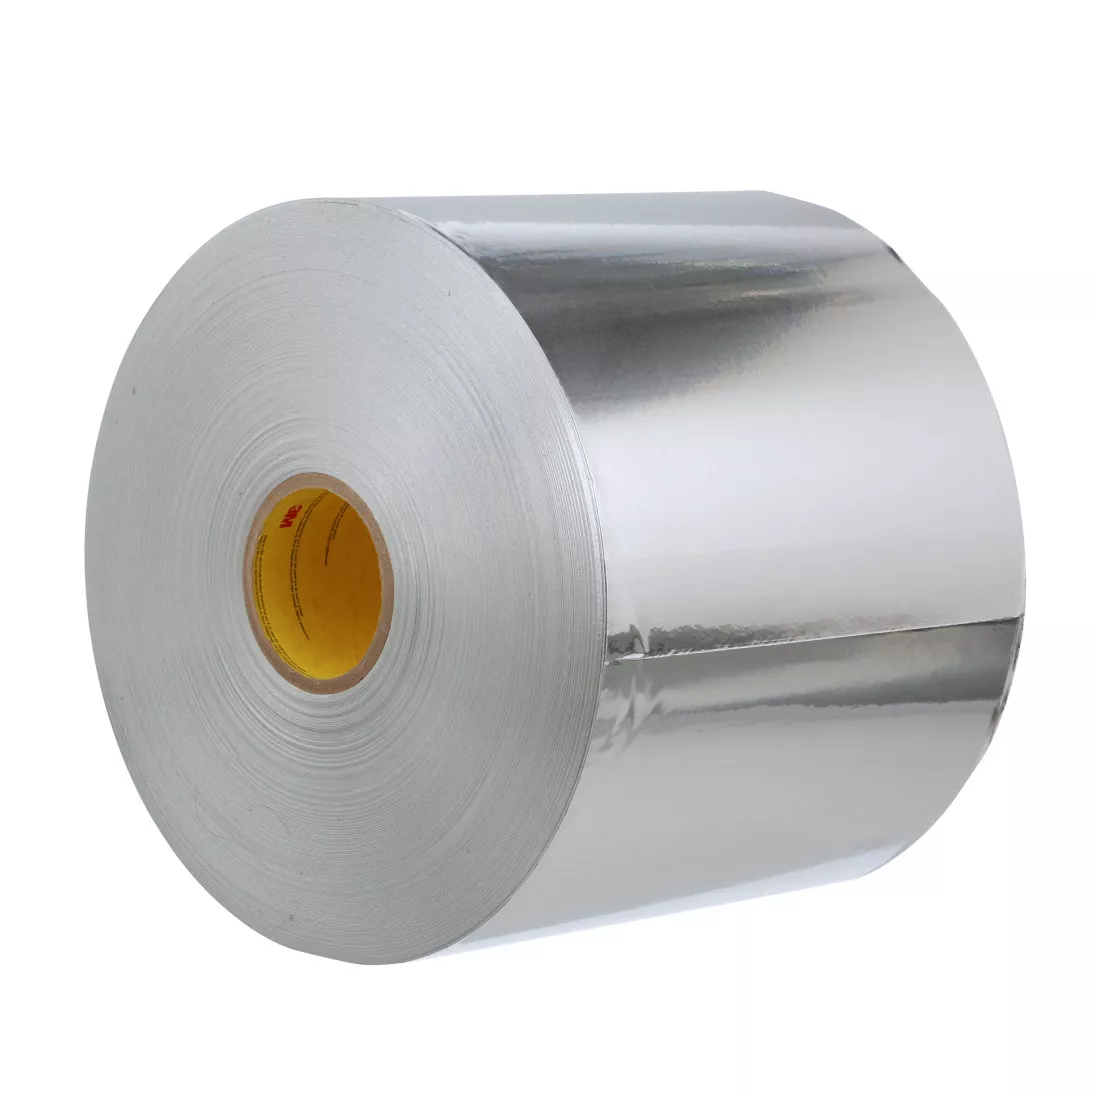 3M™ Aluminum Foil Tape 3367, Silver, 9 5/8 in x 300 yd, 3 mil, 1 roll
per case